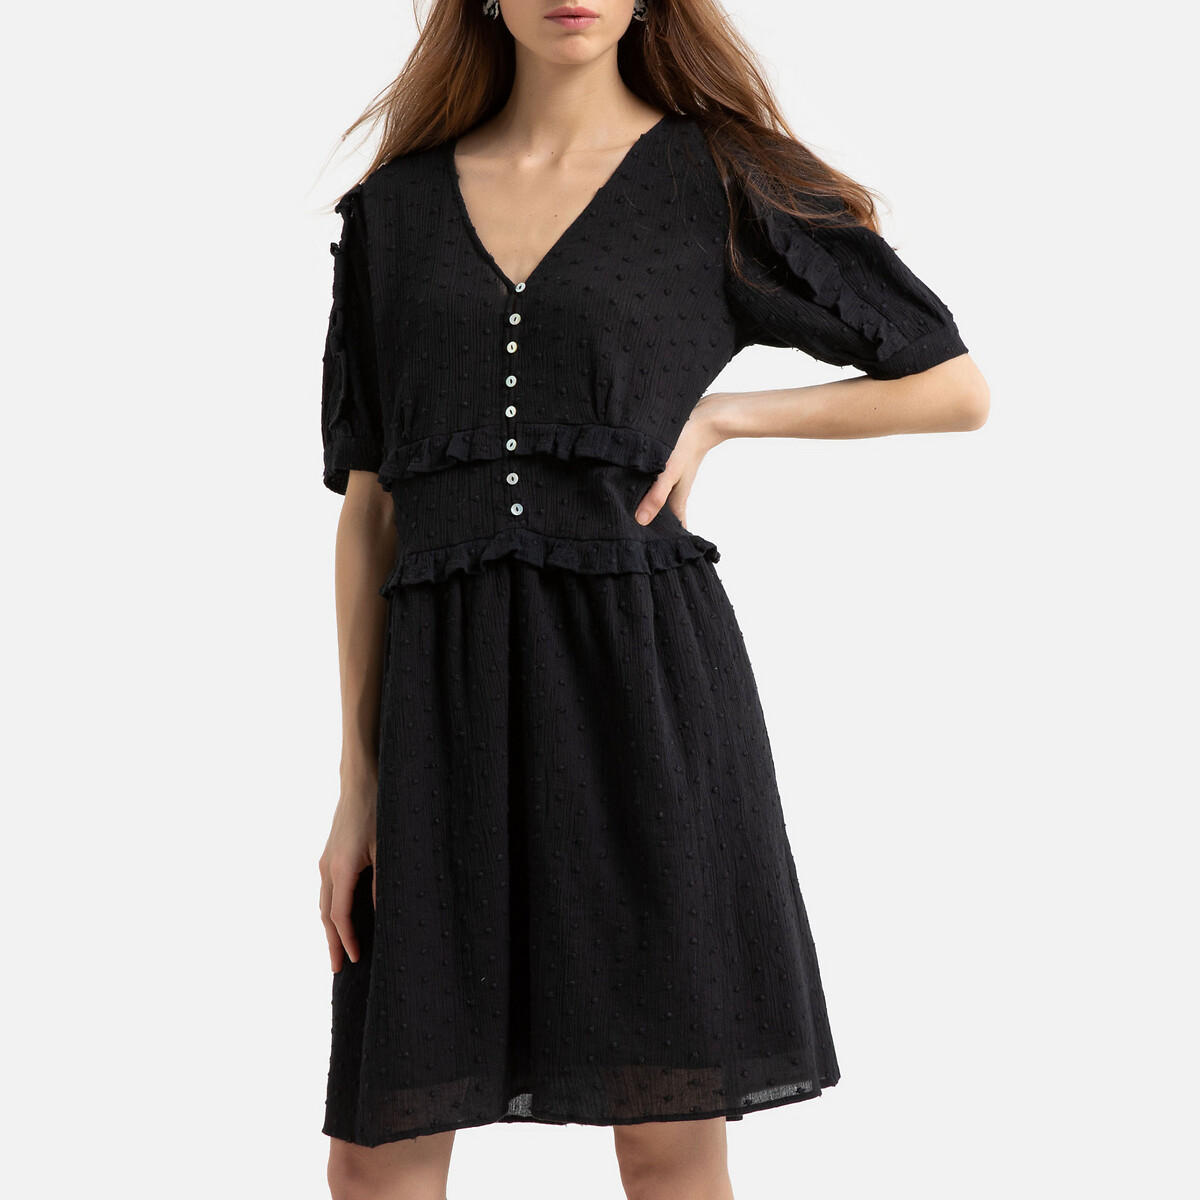 Платье La Redoute Короткое с короткими рукавами 40 (FR) - 46 (RUS) черный, размер 40 (FR) - 46 (RUS) Короткое с короткими рукавами 40 (FR) - 46 (RUS) черный - фото 1